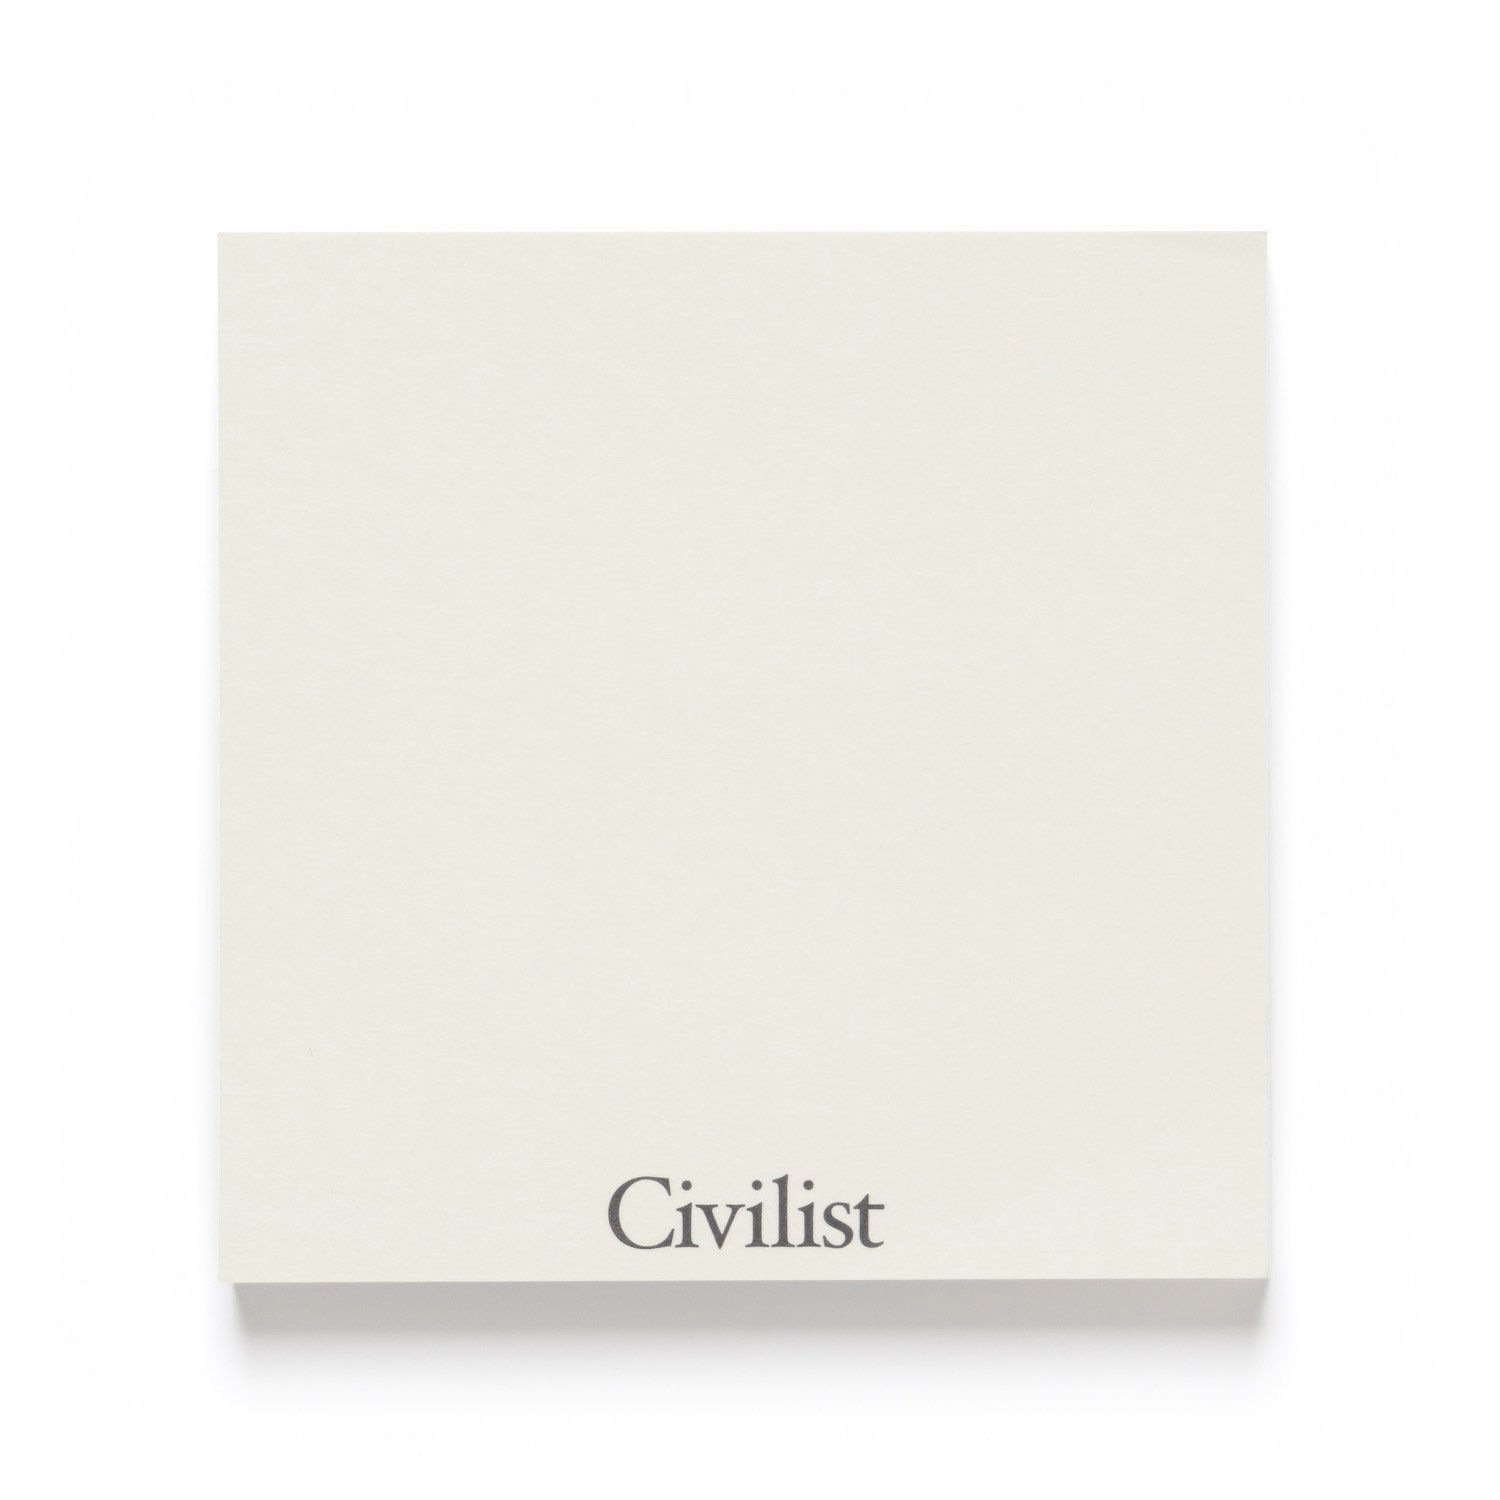 CIVILIST<br>Civilist Notes<br>